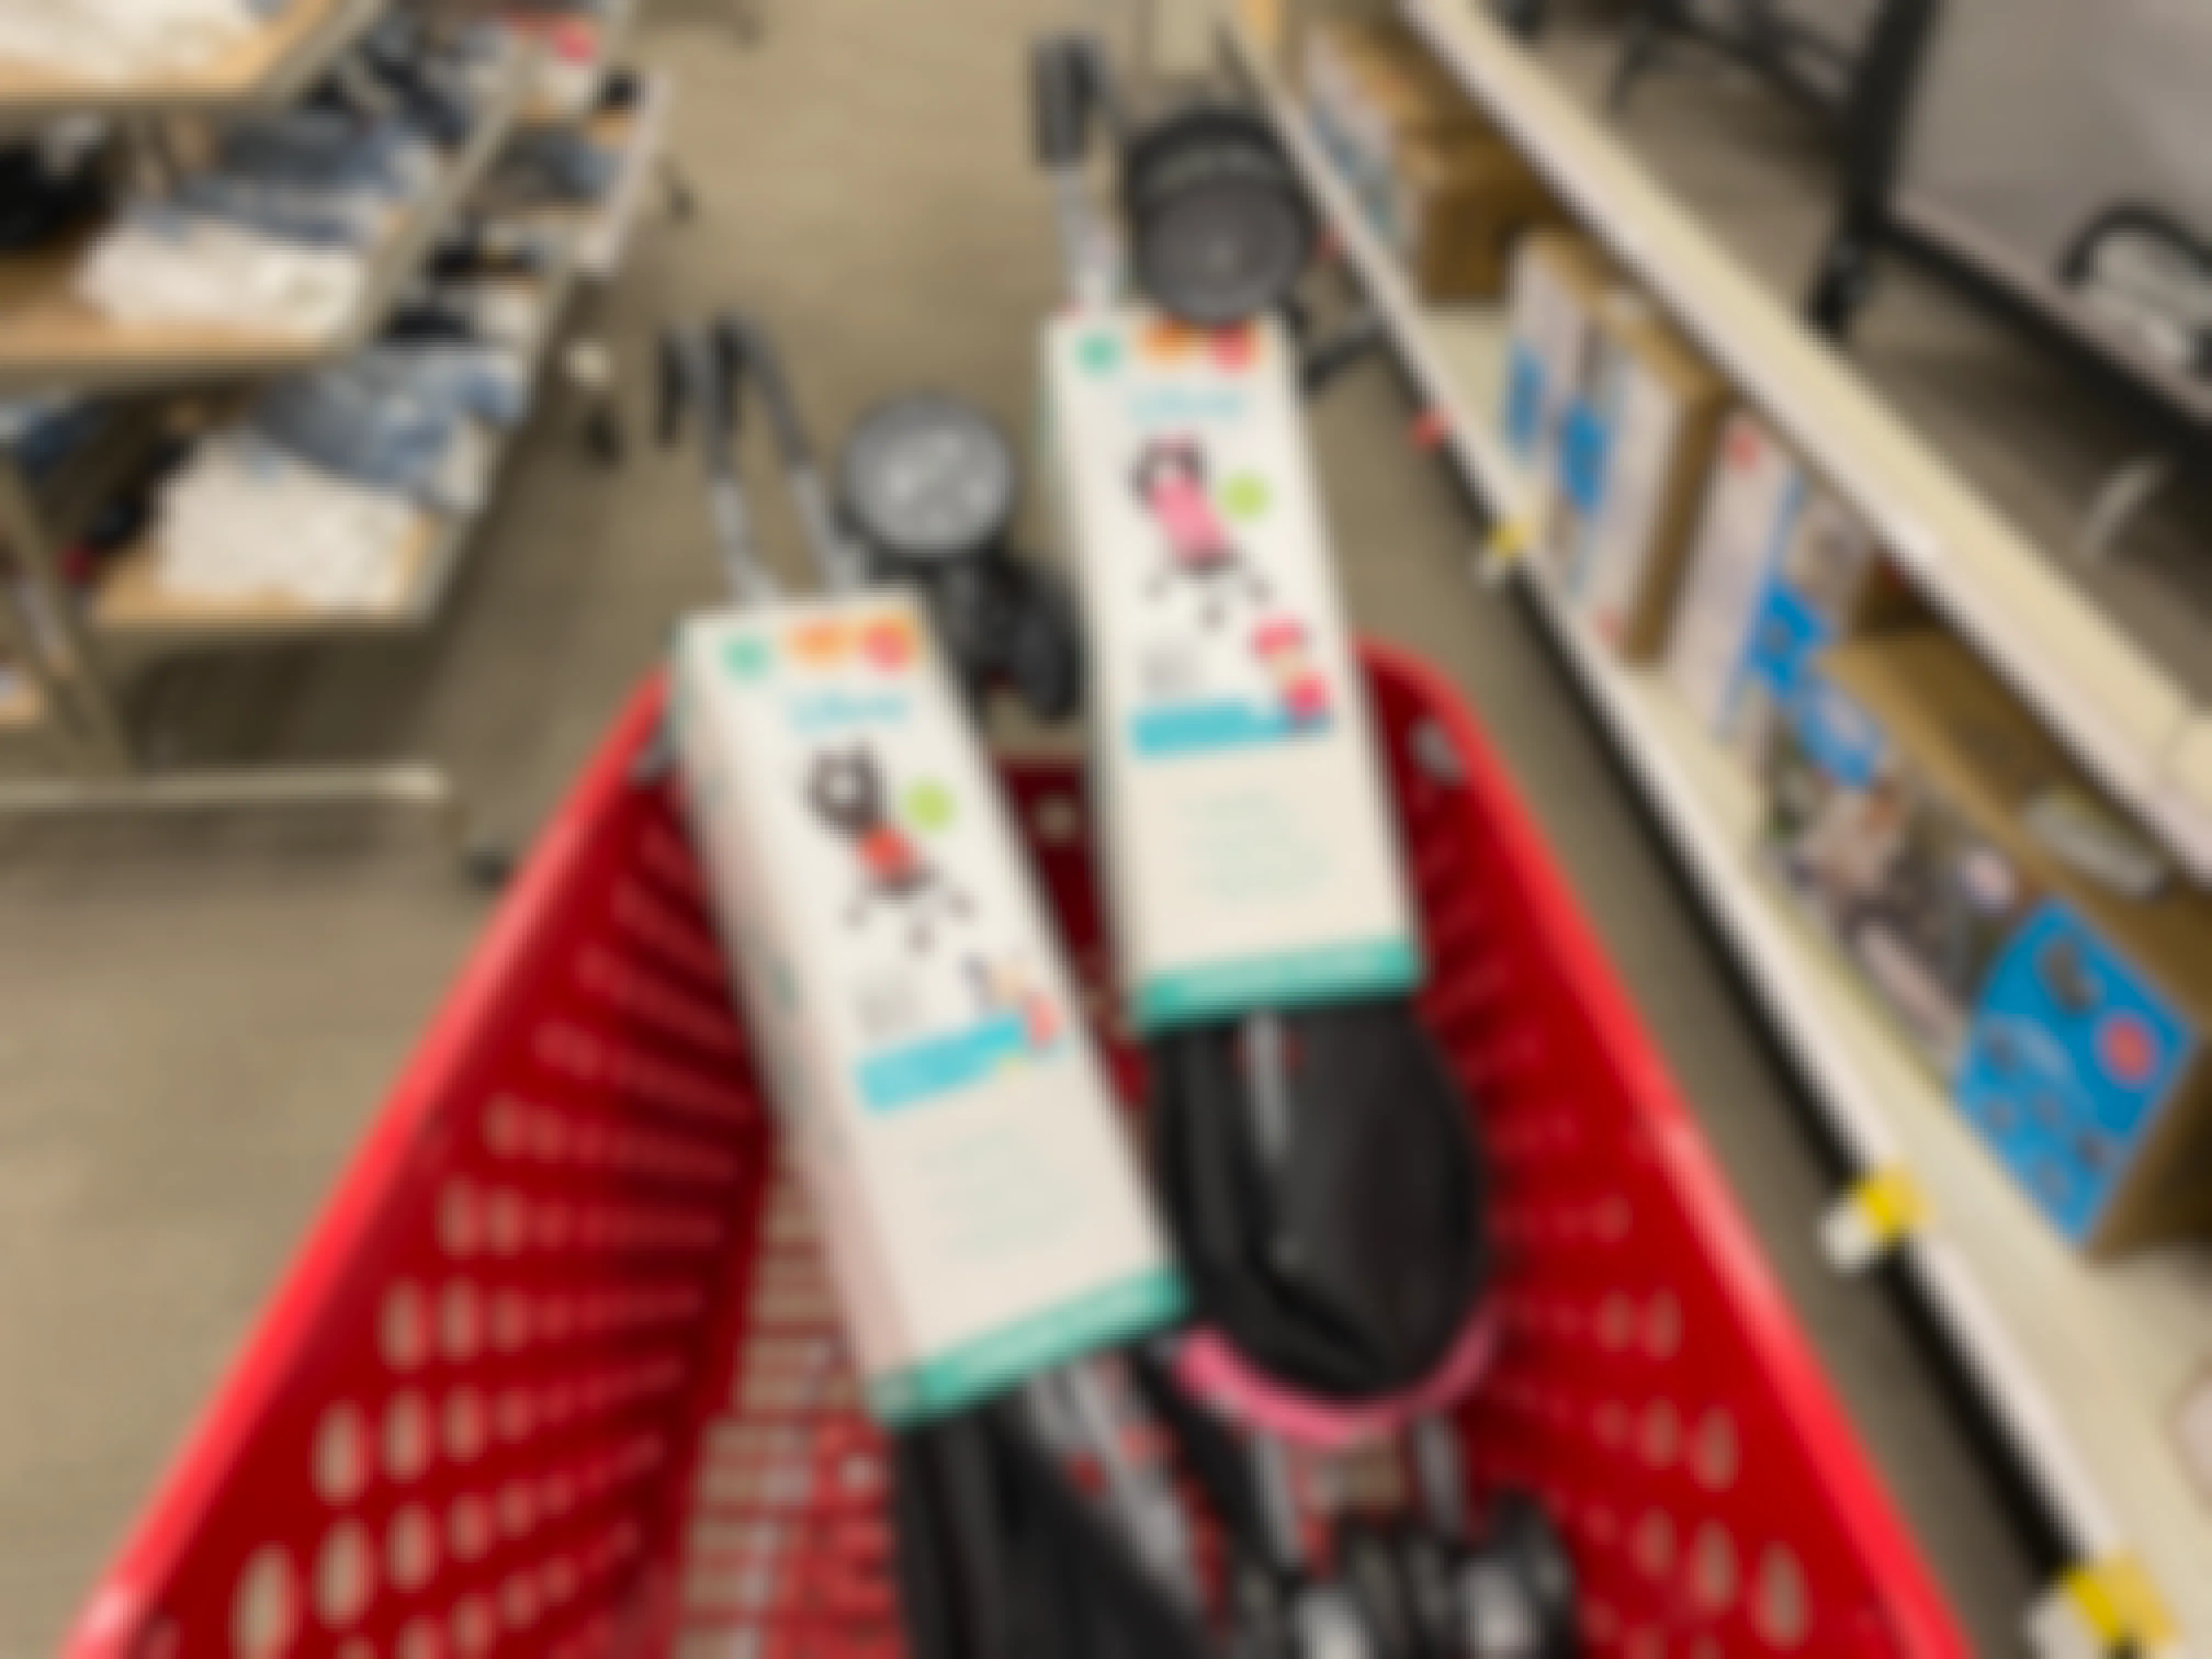 disney strollers in Target cart